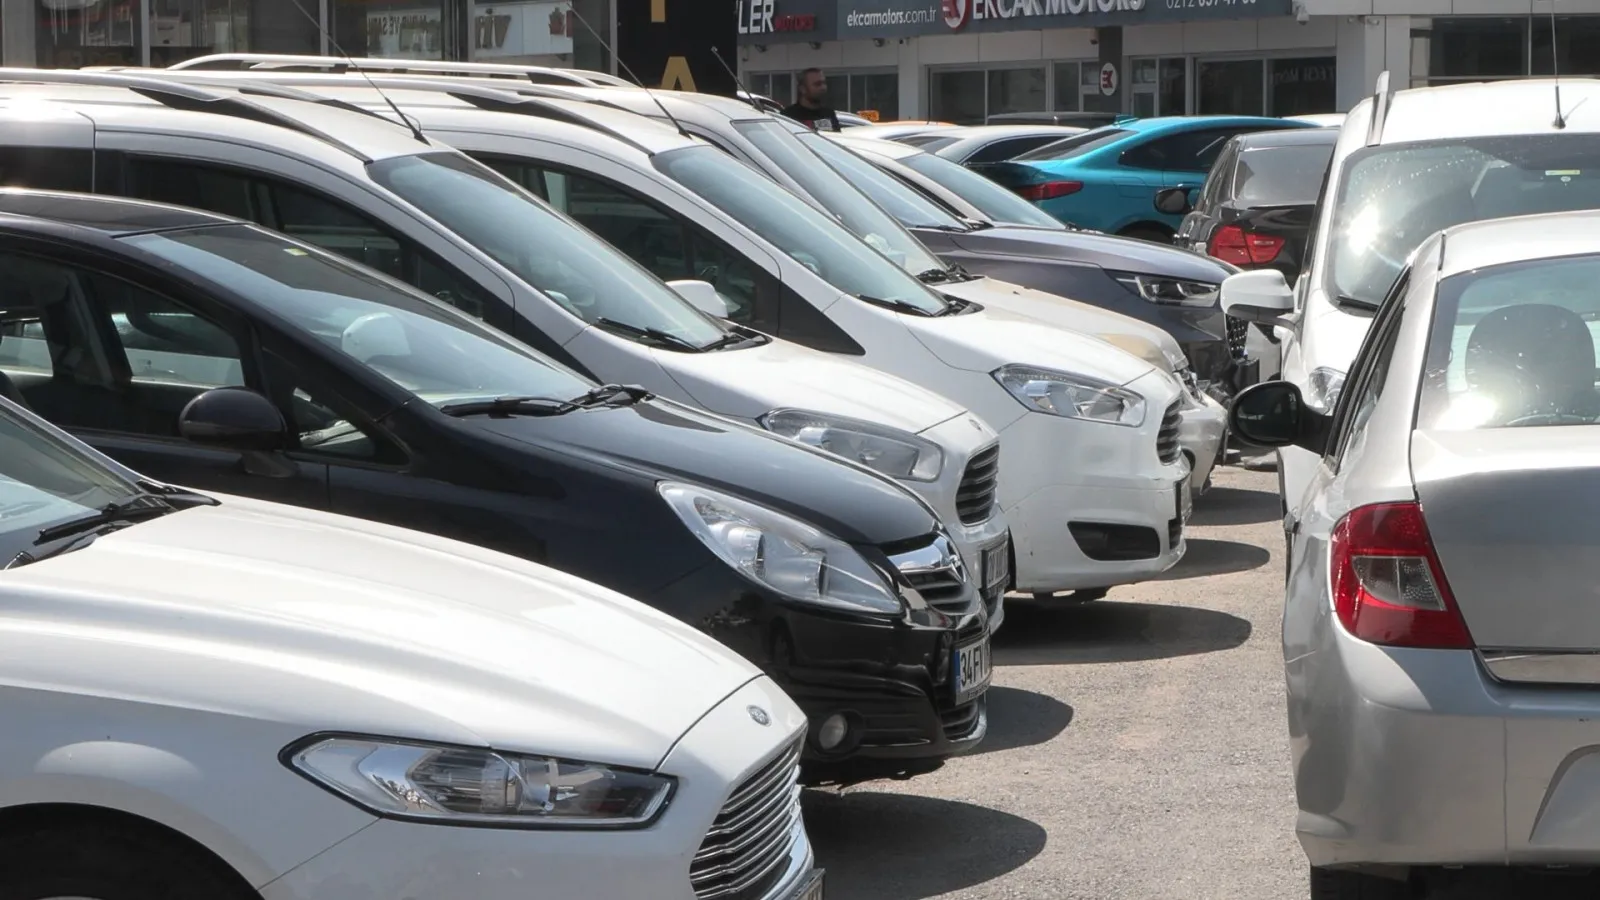 Otomobil sektörünü hareketli günler bekliyor: İkinci el araç fiyatları düşmeye devam edecek mi?